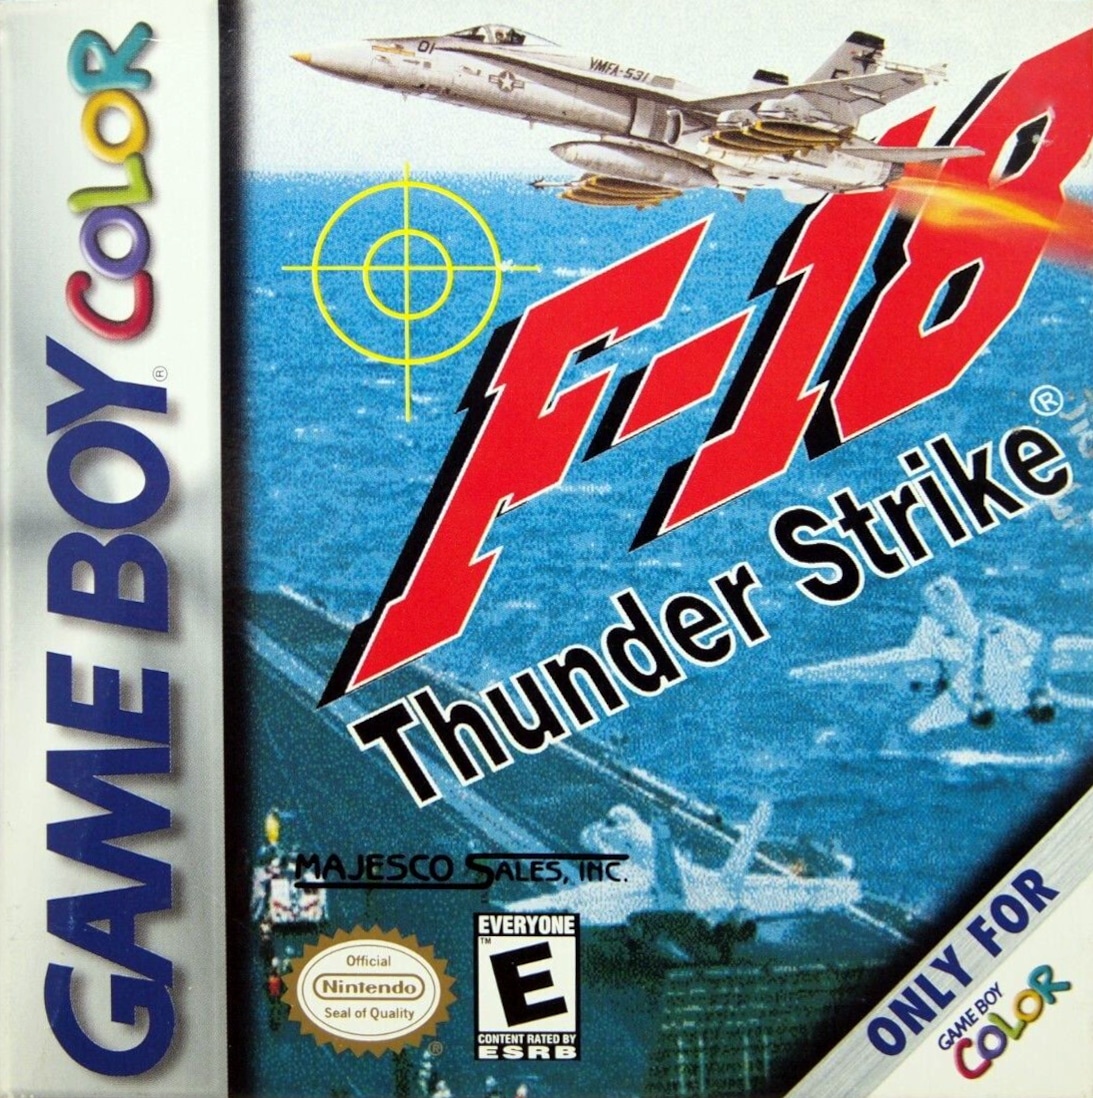 F-18 Thunder Strike cover